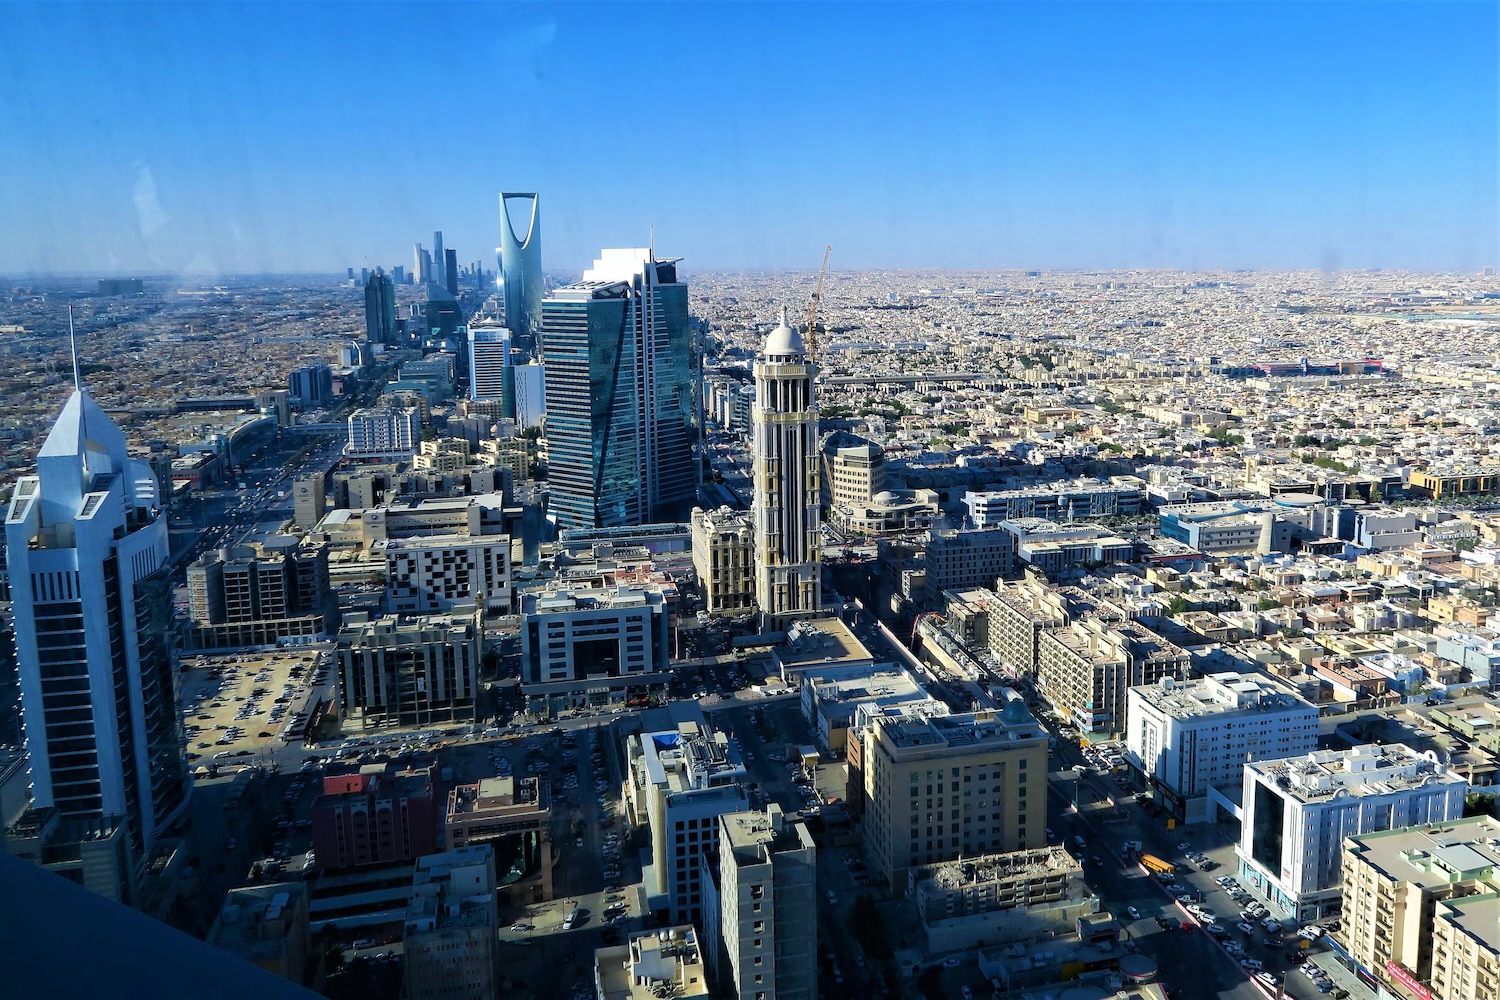 6 ways life in Saudi Arabia will change in 2018